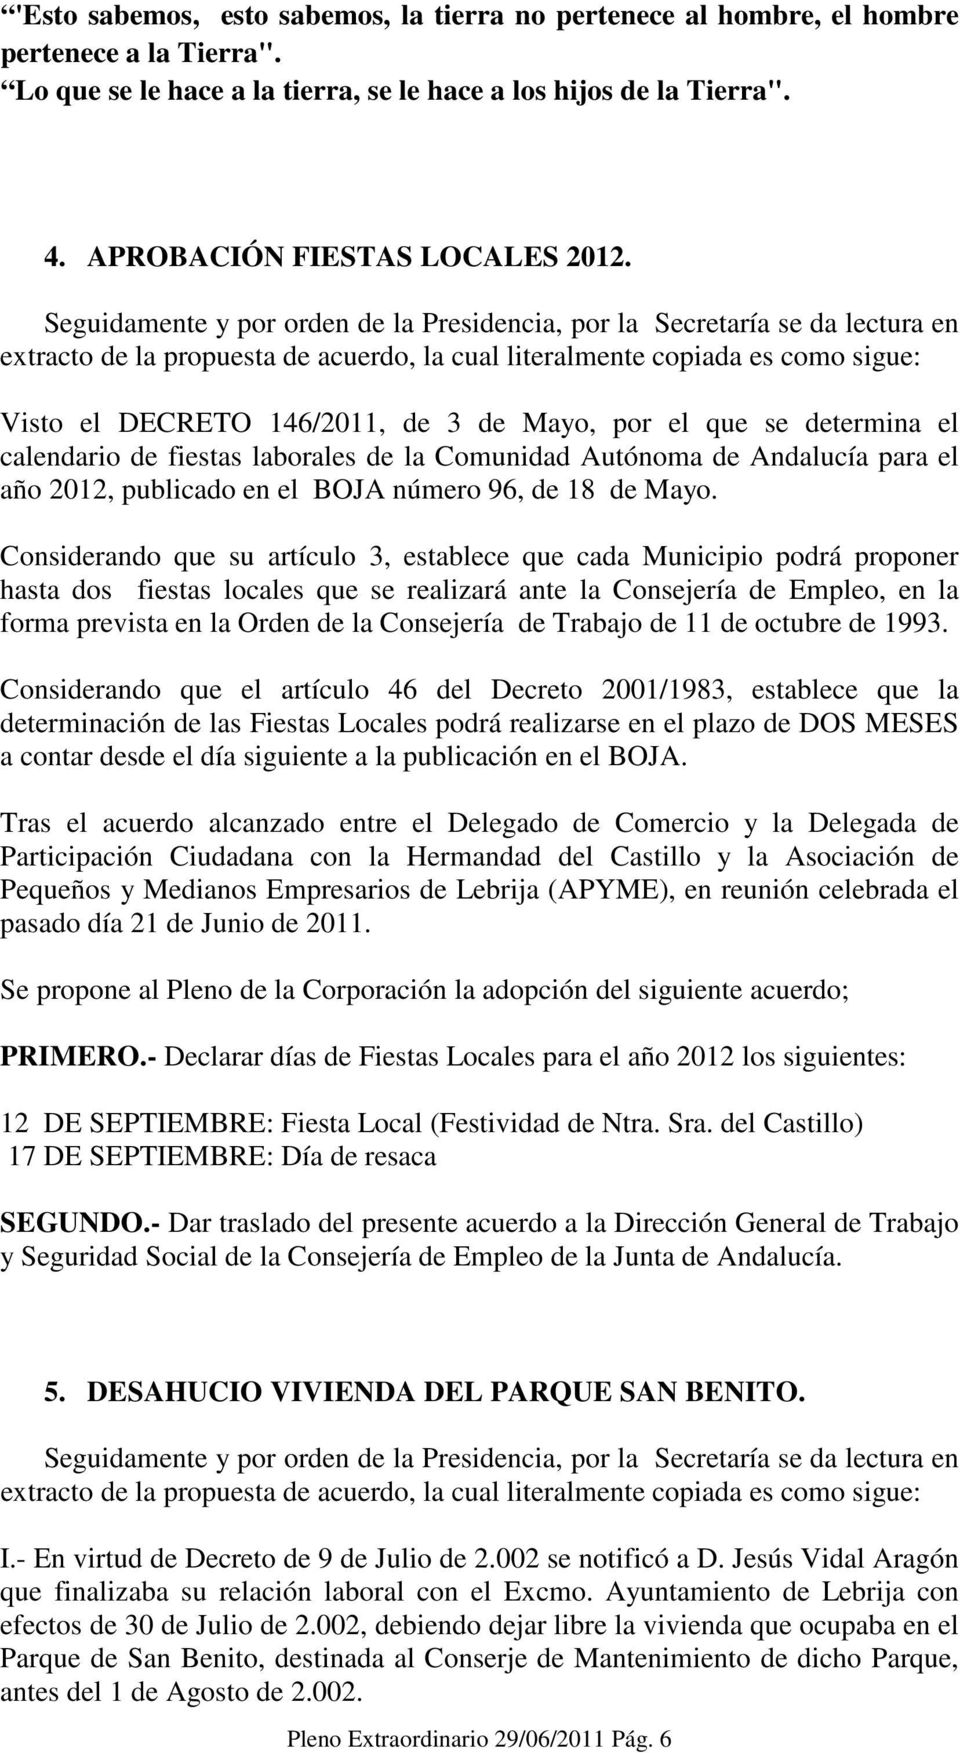 Visto el DECRETO 146/2011, de 3 de Mayo, por el que se determina el calendario de fiestas laborales de la Comunidad Autónoma de Andalucía para el año 2012, publicado en el BOJA número 96, de 18 de